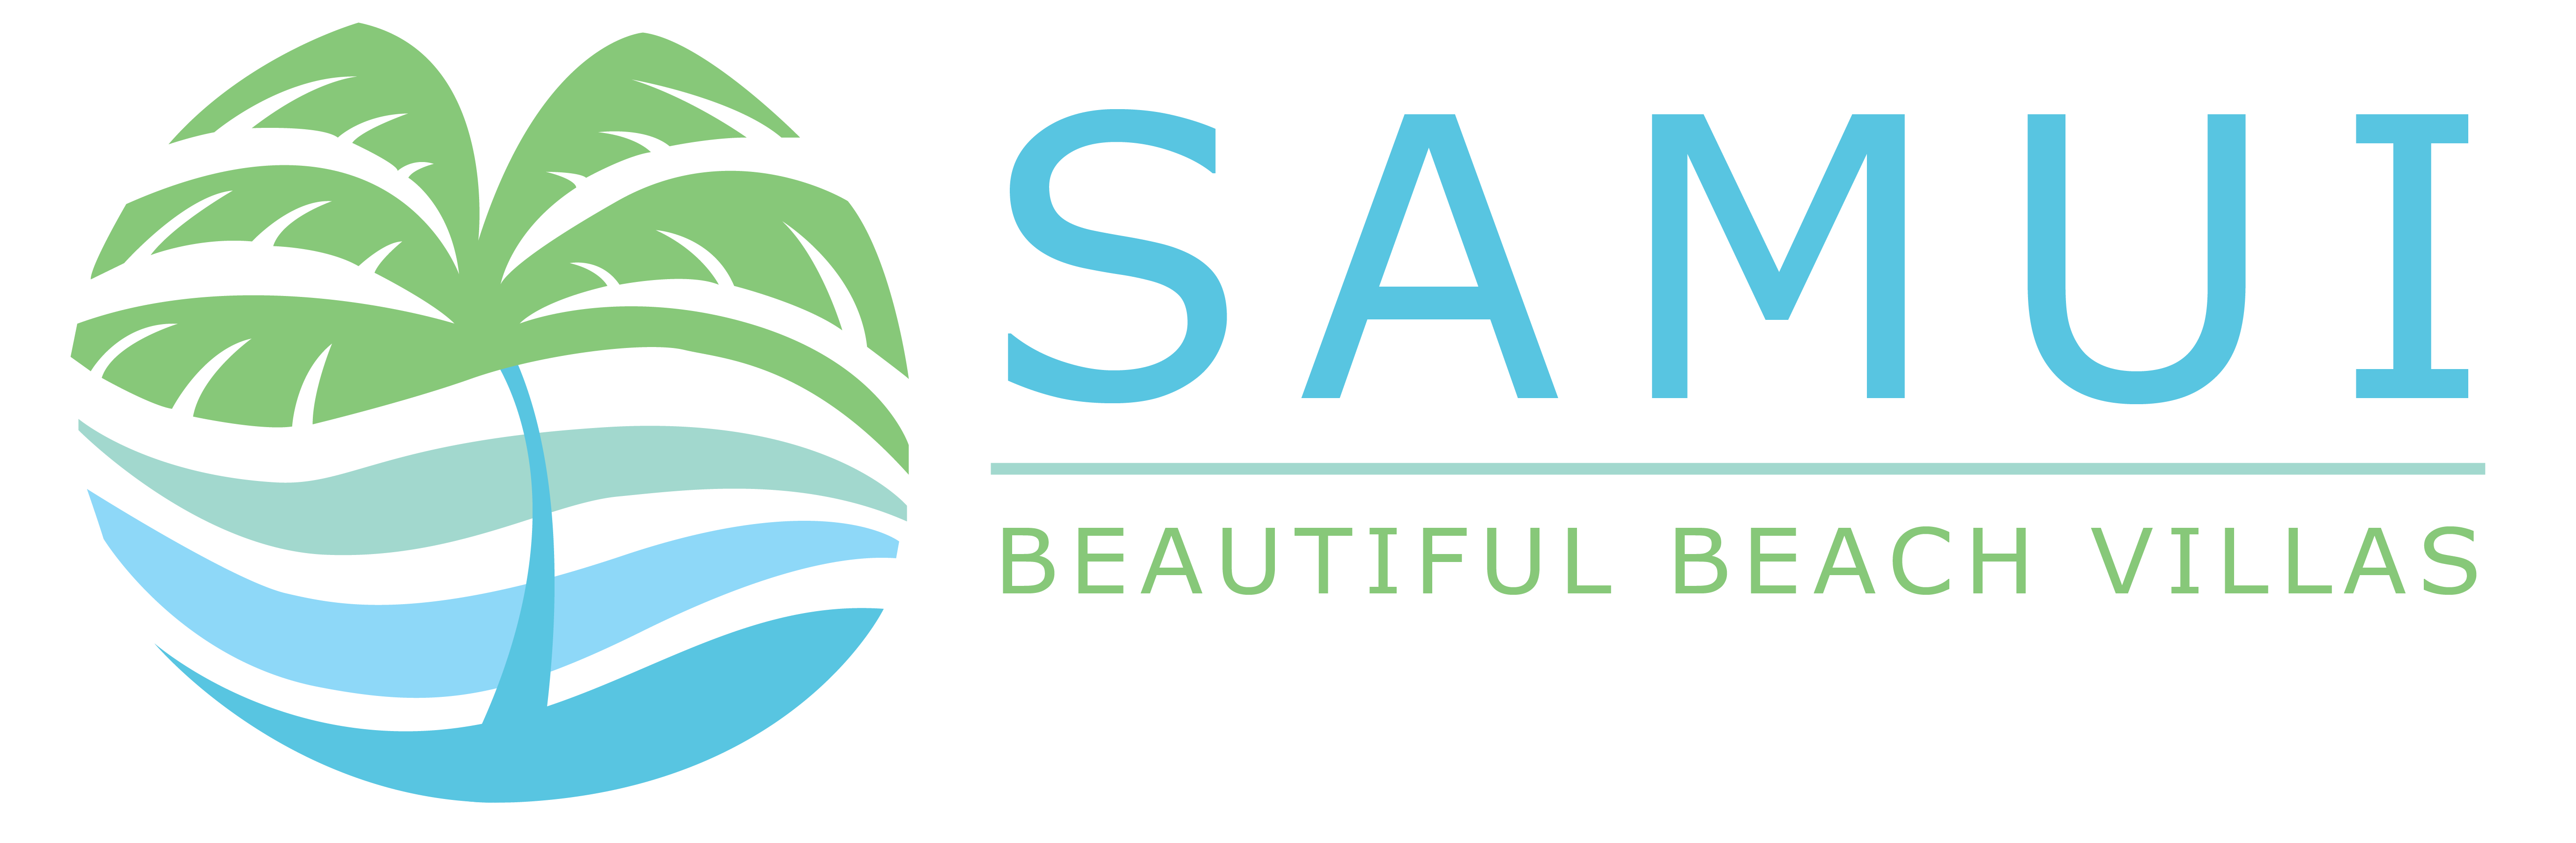 Beautiful Beach Logo - Samui Beautiful Beach Villas